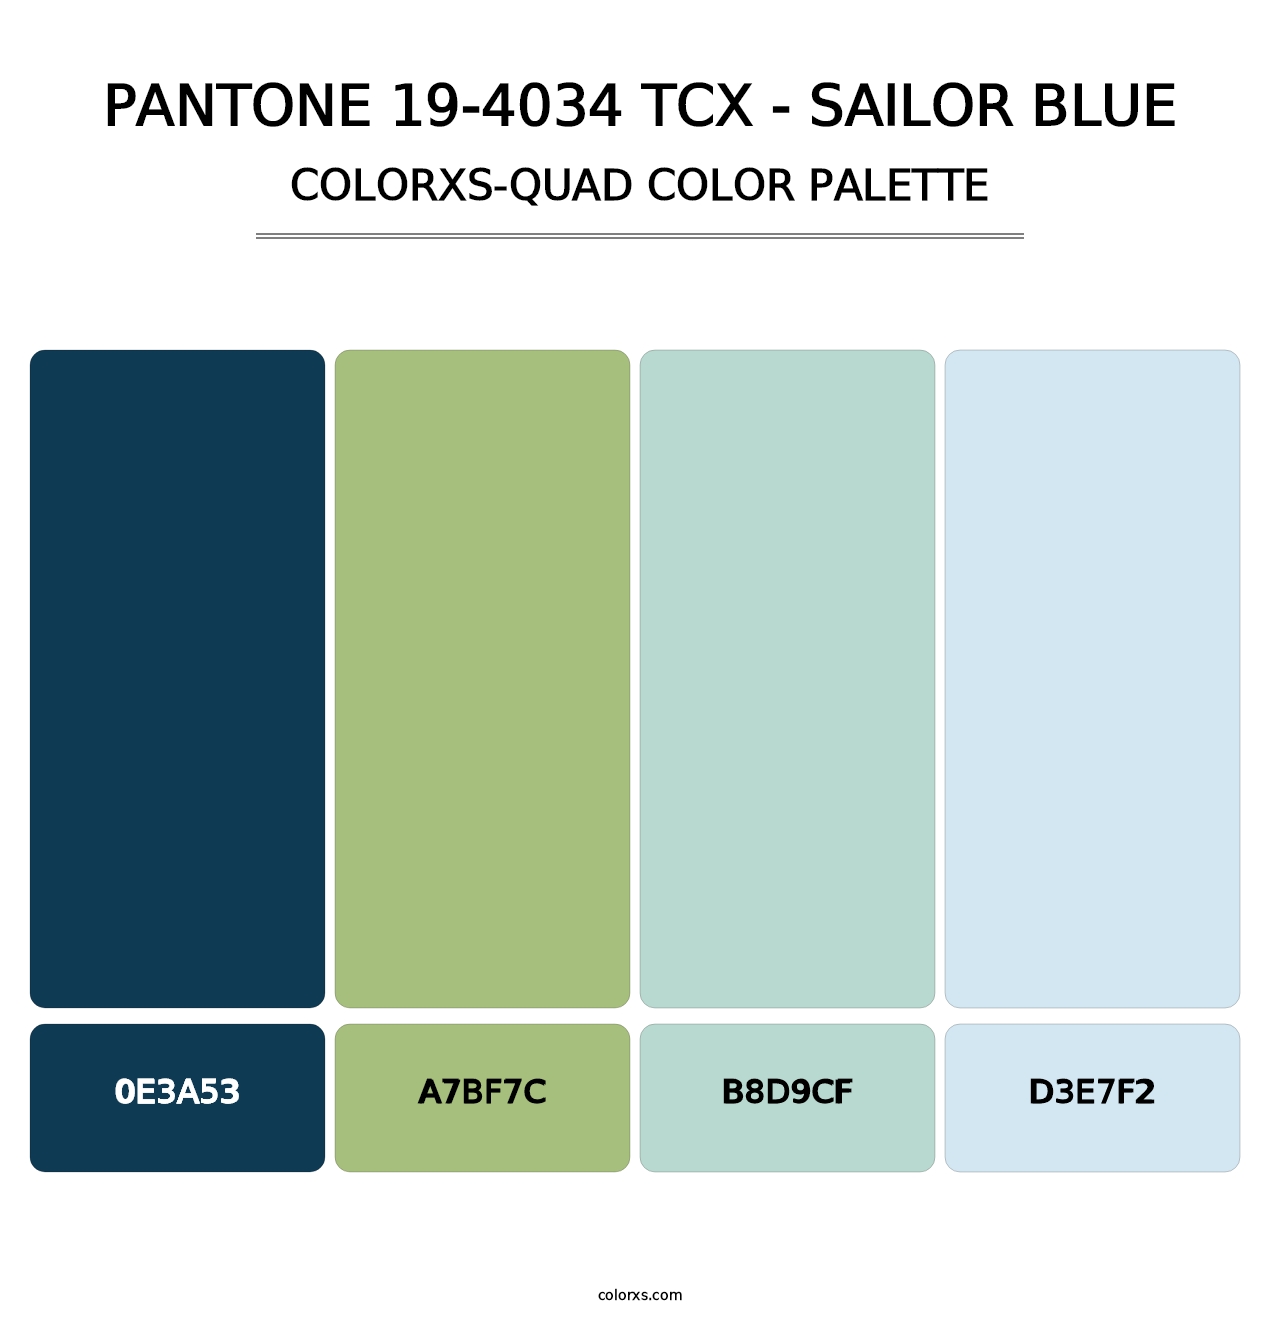 PANTONE 19-4034 TCX - Sailor Blue - Colorxs Quad Palette